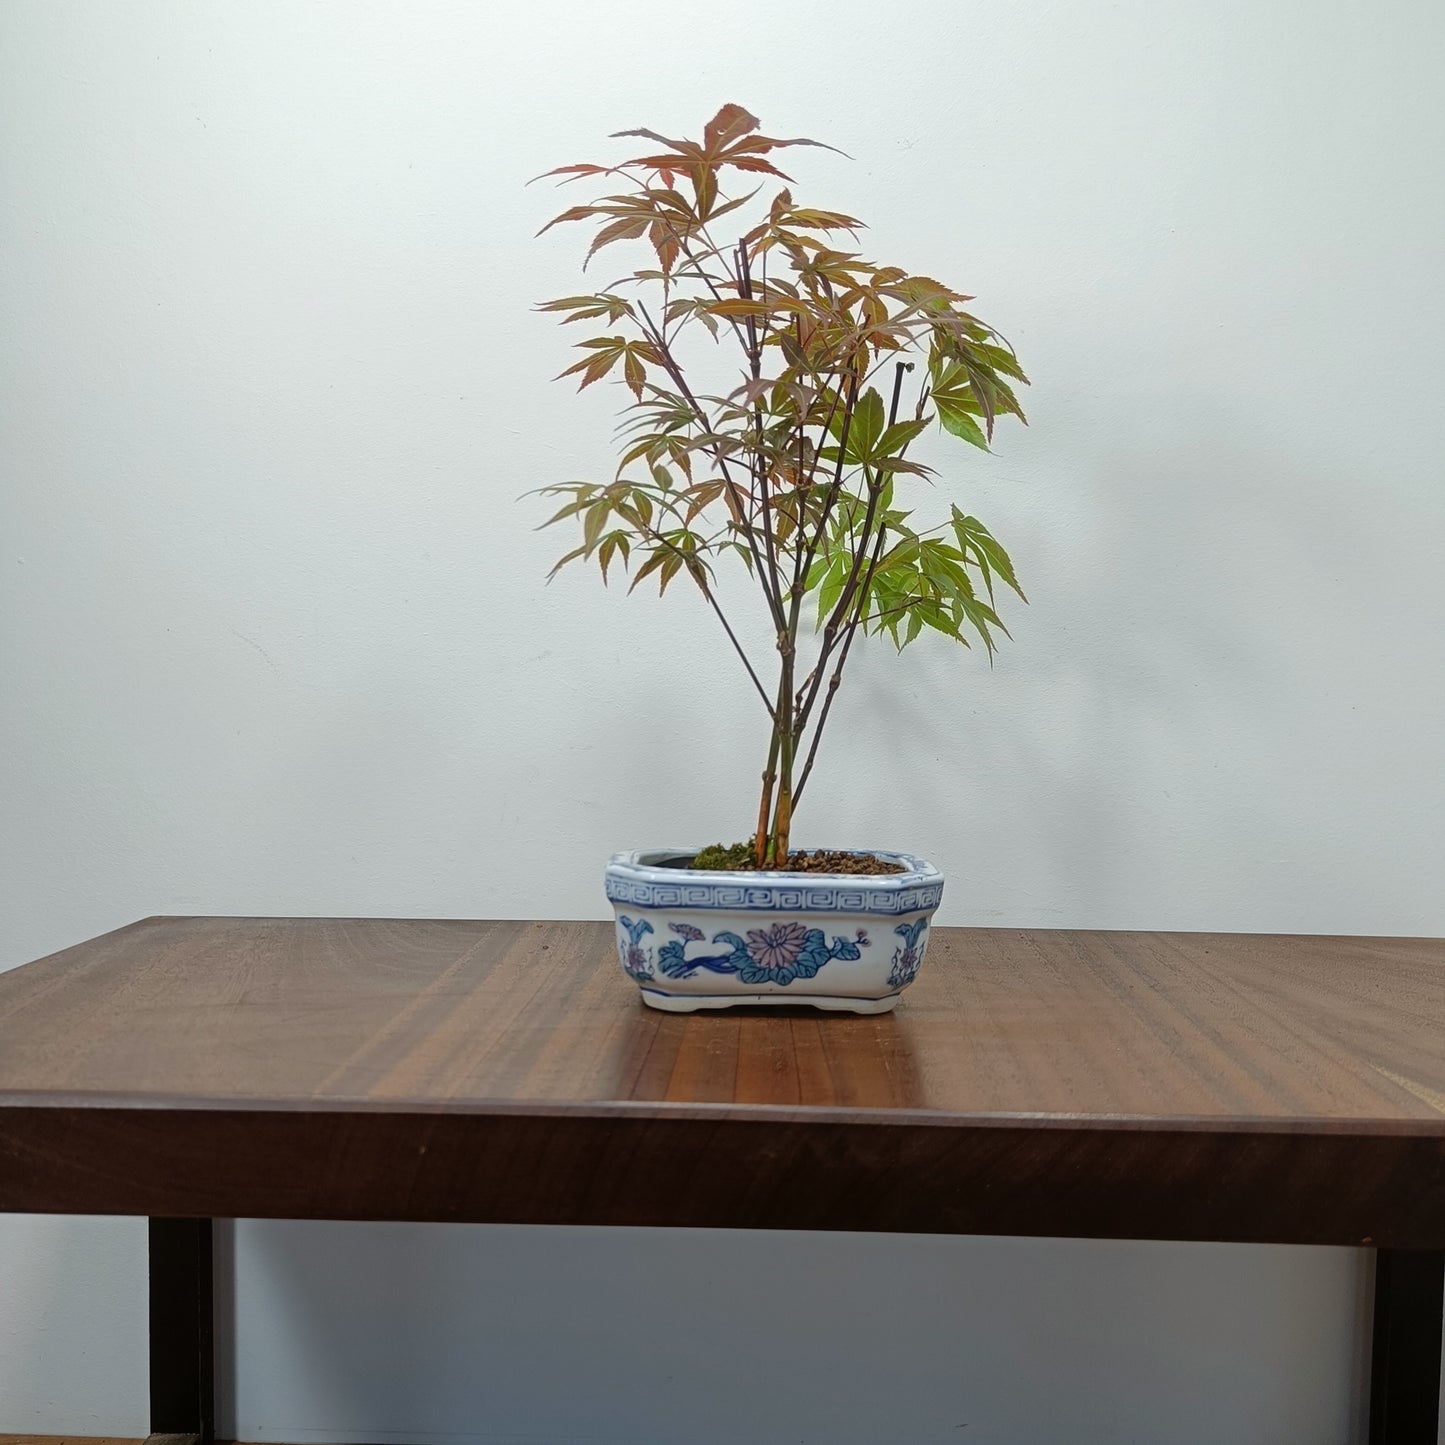 Japanese Maple Bonsai